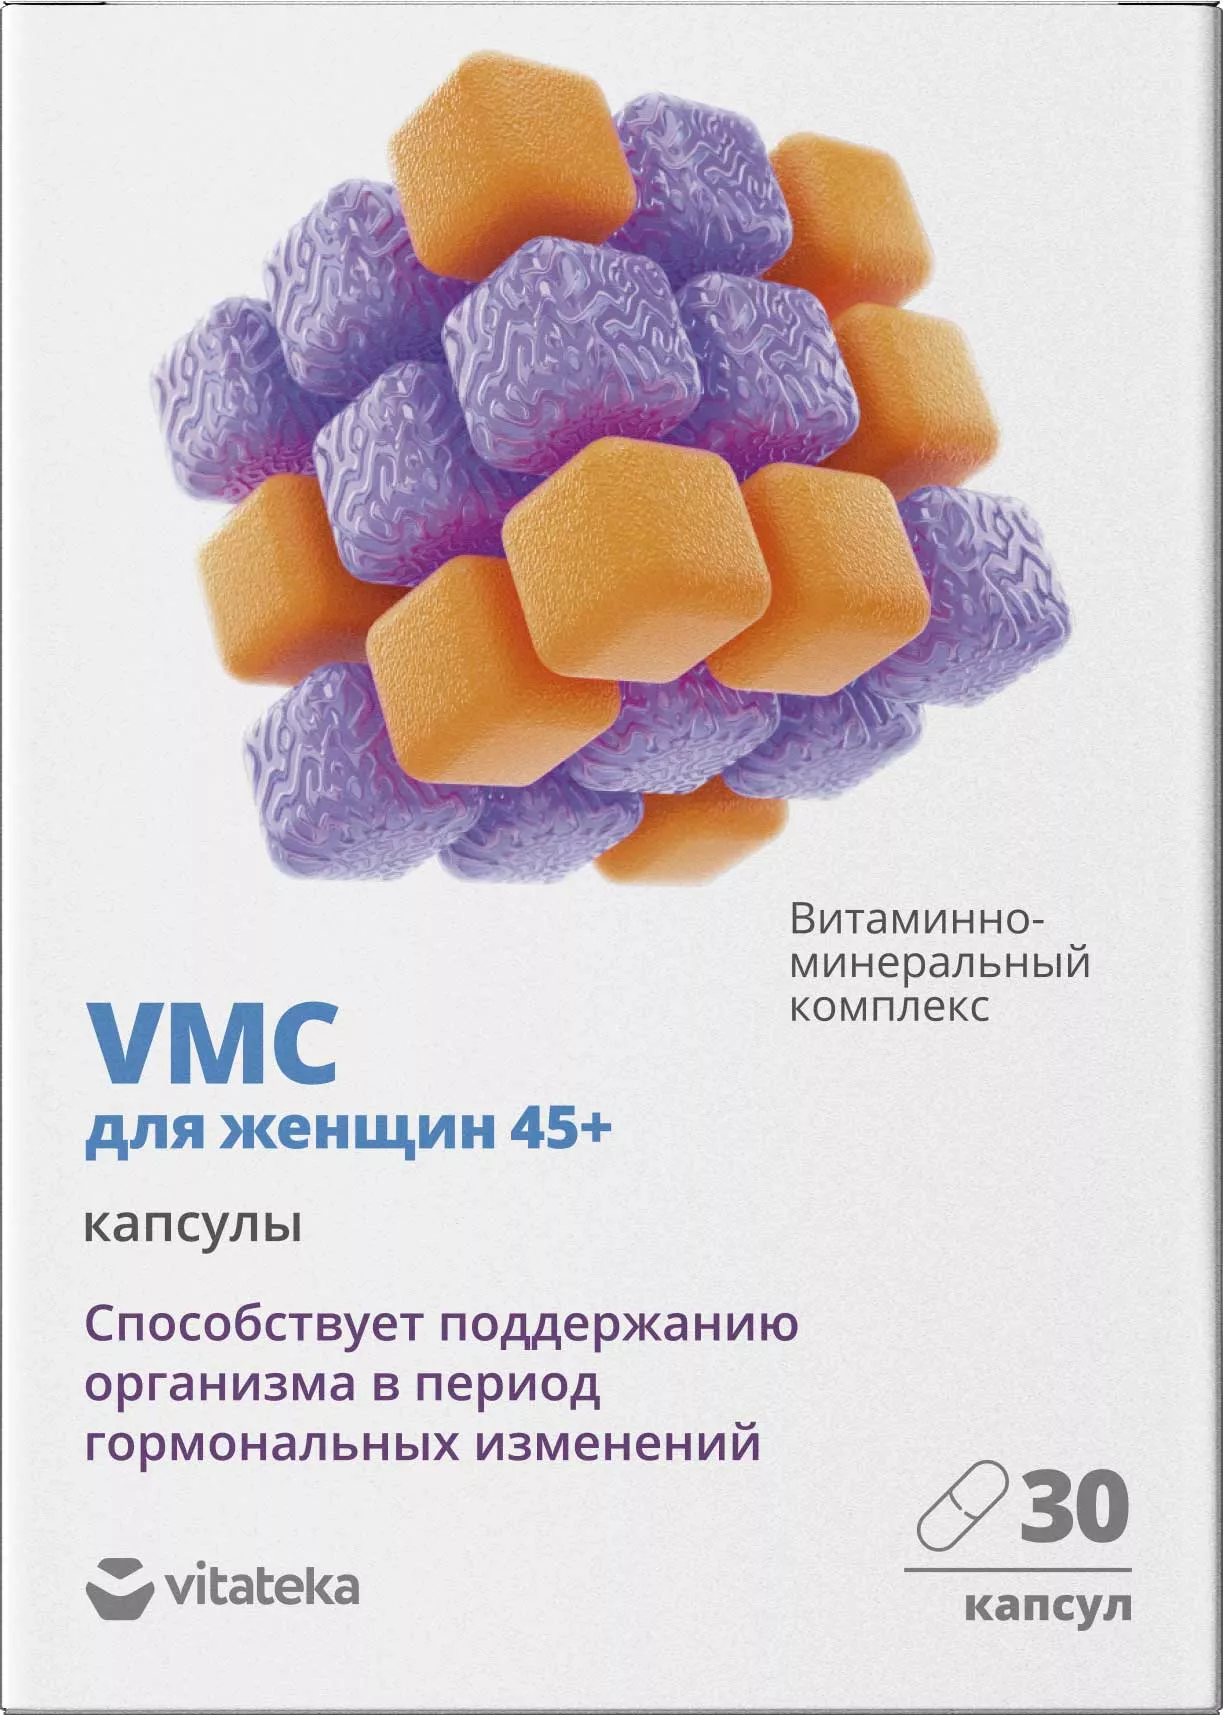 Витаминно-минеральный комплекс для женщин 45+